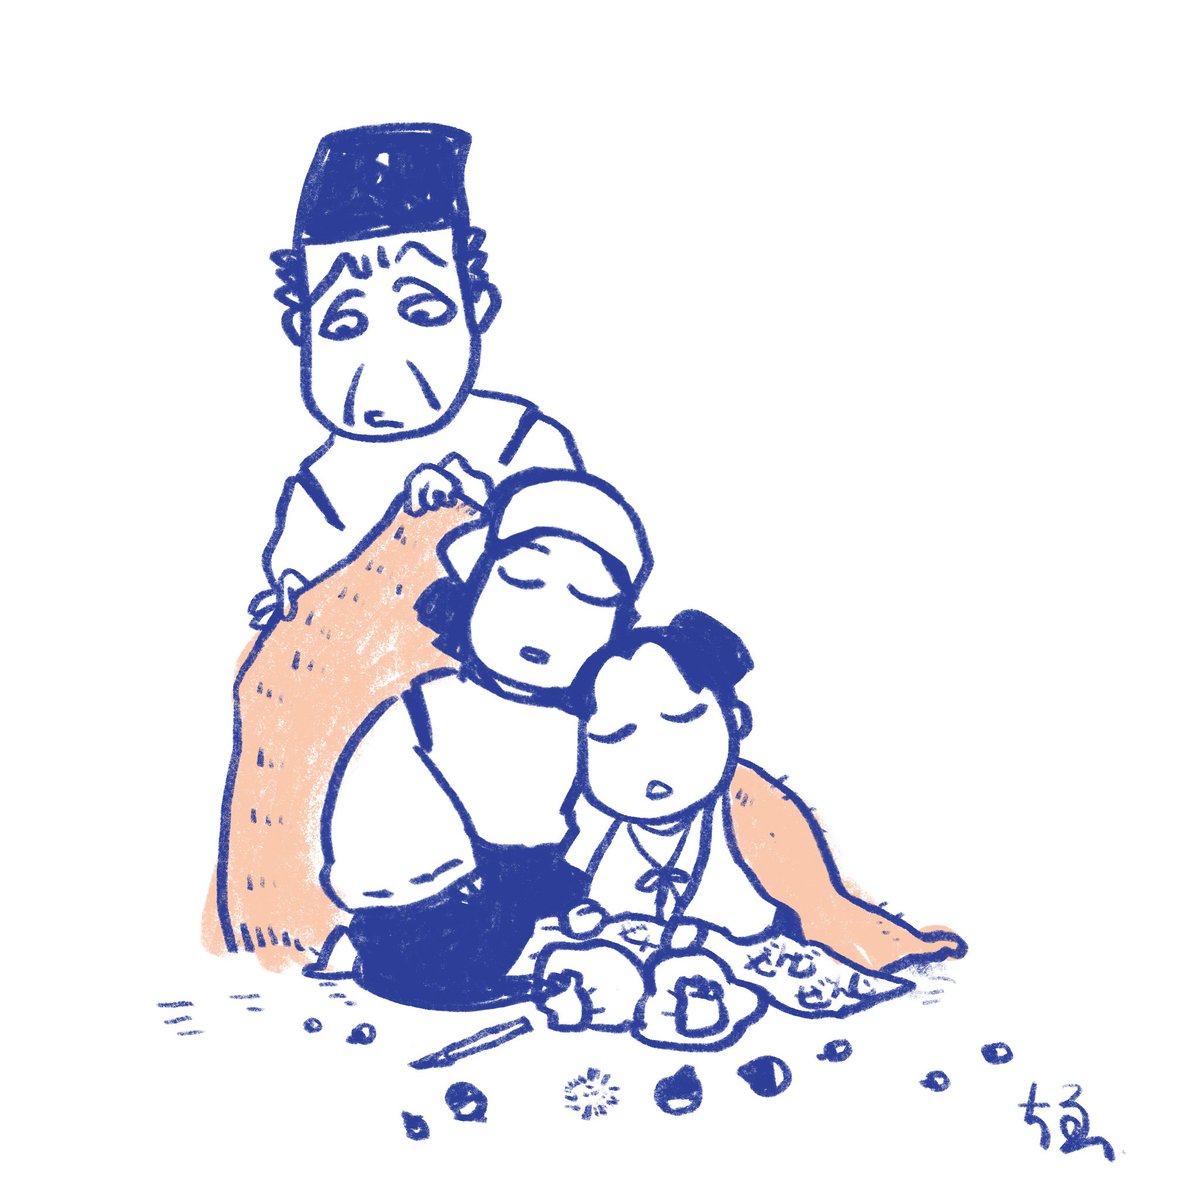 善児枠パターン  ビフォー: 命令とあれば無表情で処す  アフター: 子供のためにブランコを作ってしまう 処せない  #鎌倉殿の13人